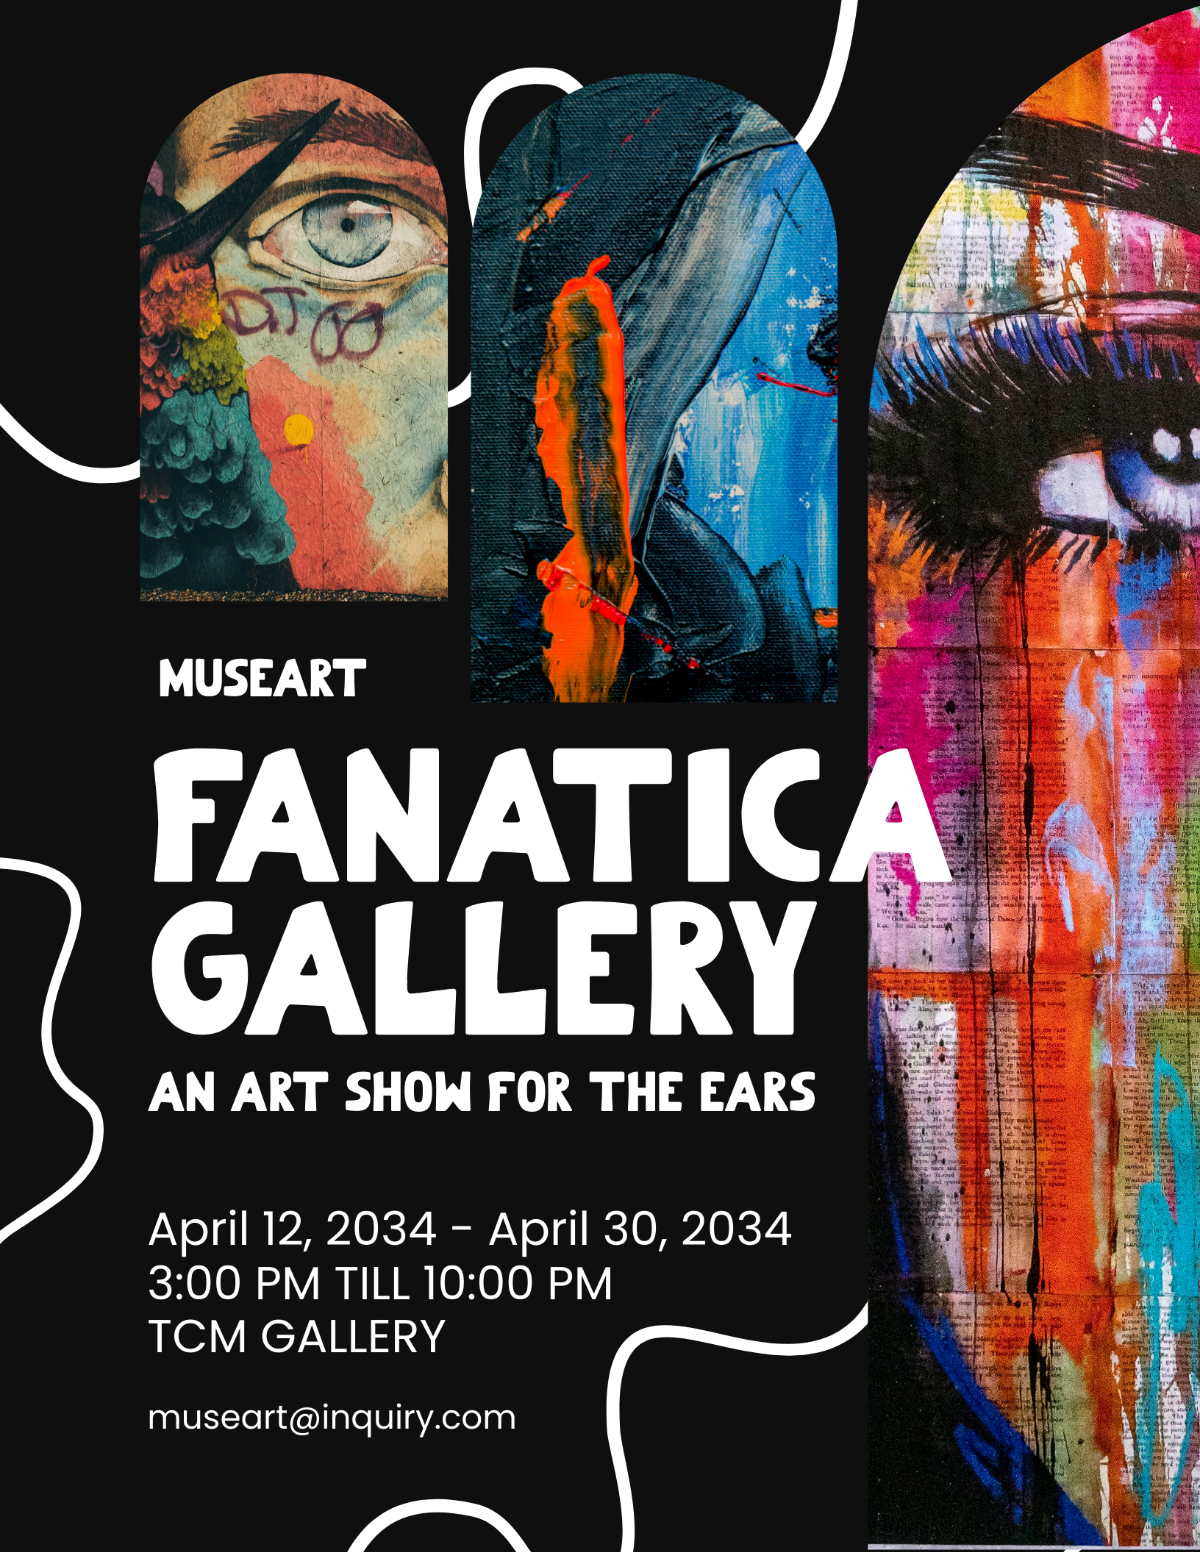 Art Show Flyer